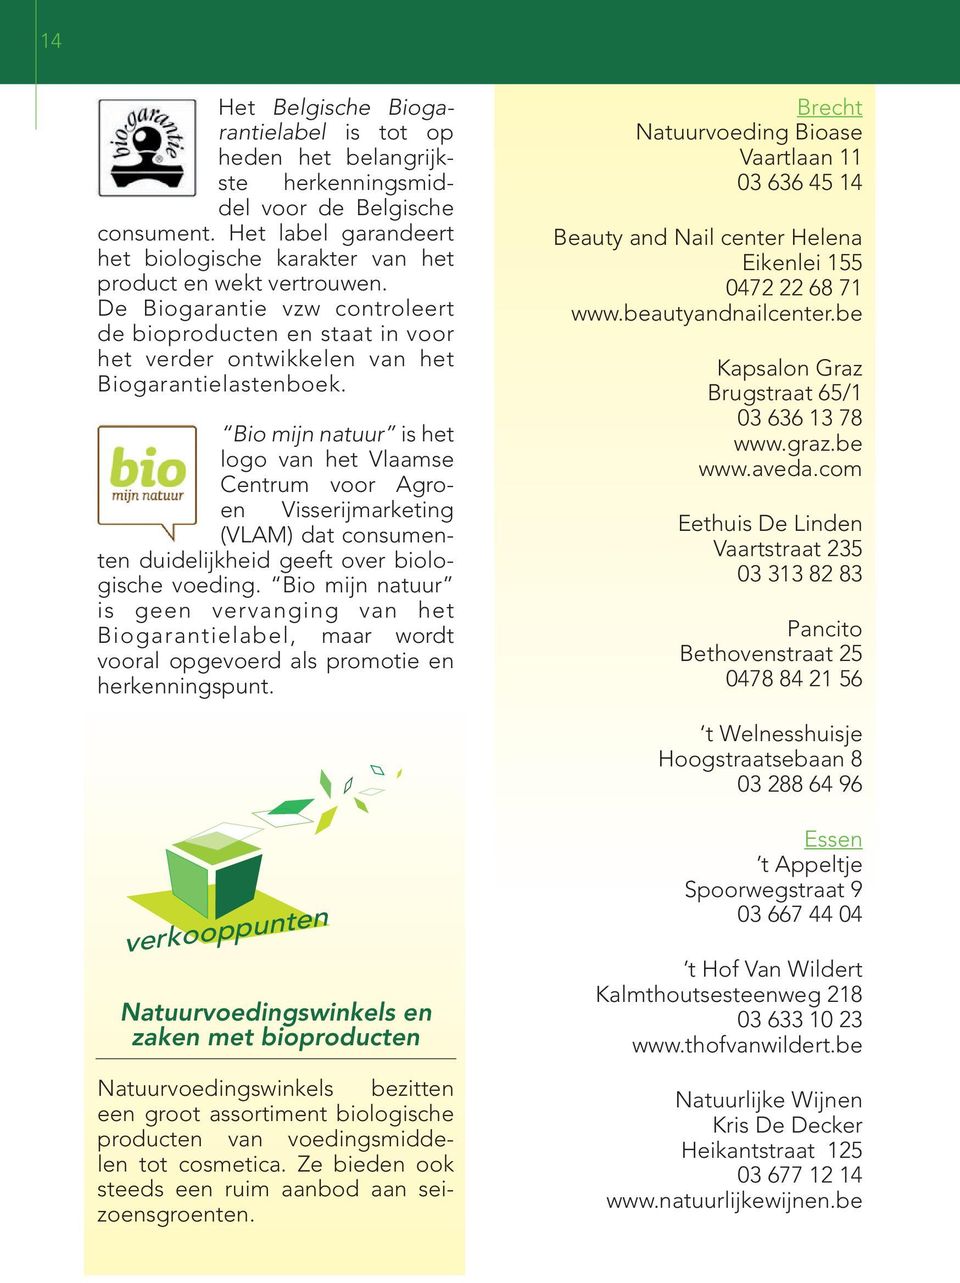 Bio mijn natuur is het logo van het Vlaamse Centrum voor Agroen Visserijmarketing (VLAM) dat consumenten duidelijkheid geeft over biologische voeding.